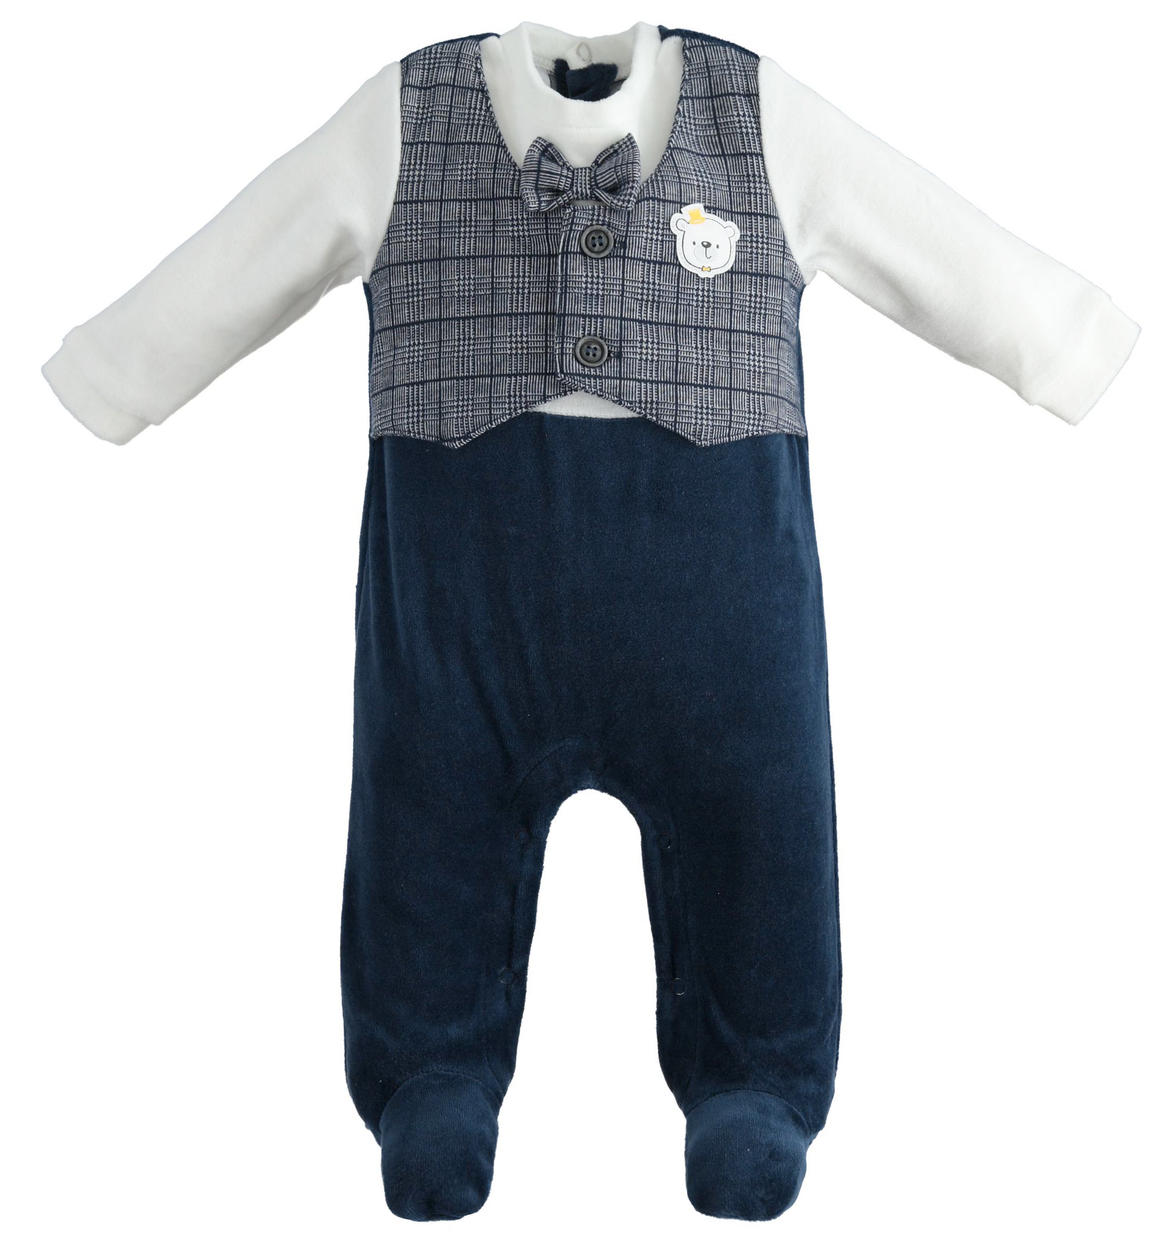 Elegante tutina in ciniglia con piedini per neonato da 0 a 18 mesi iDO -  TUTE & COMPLETI - Bambino - iDO